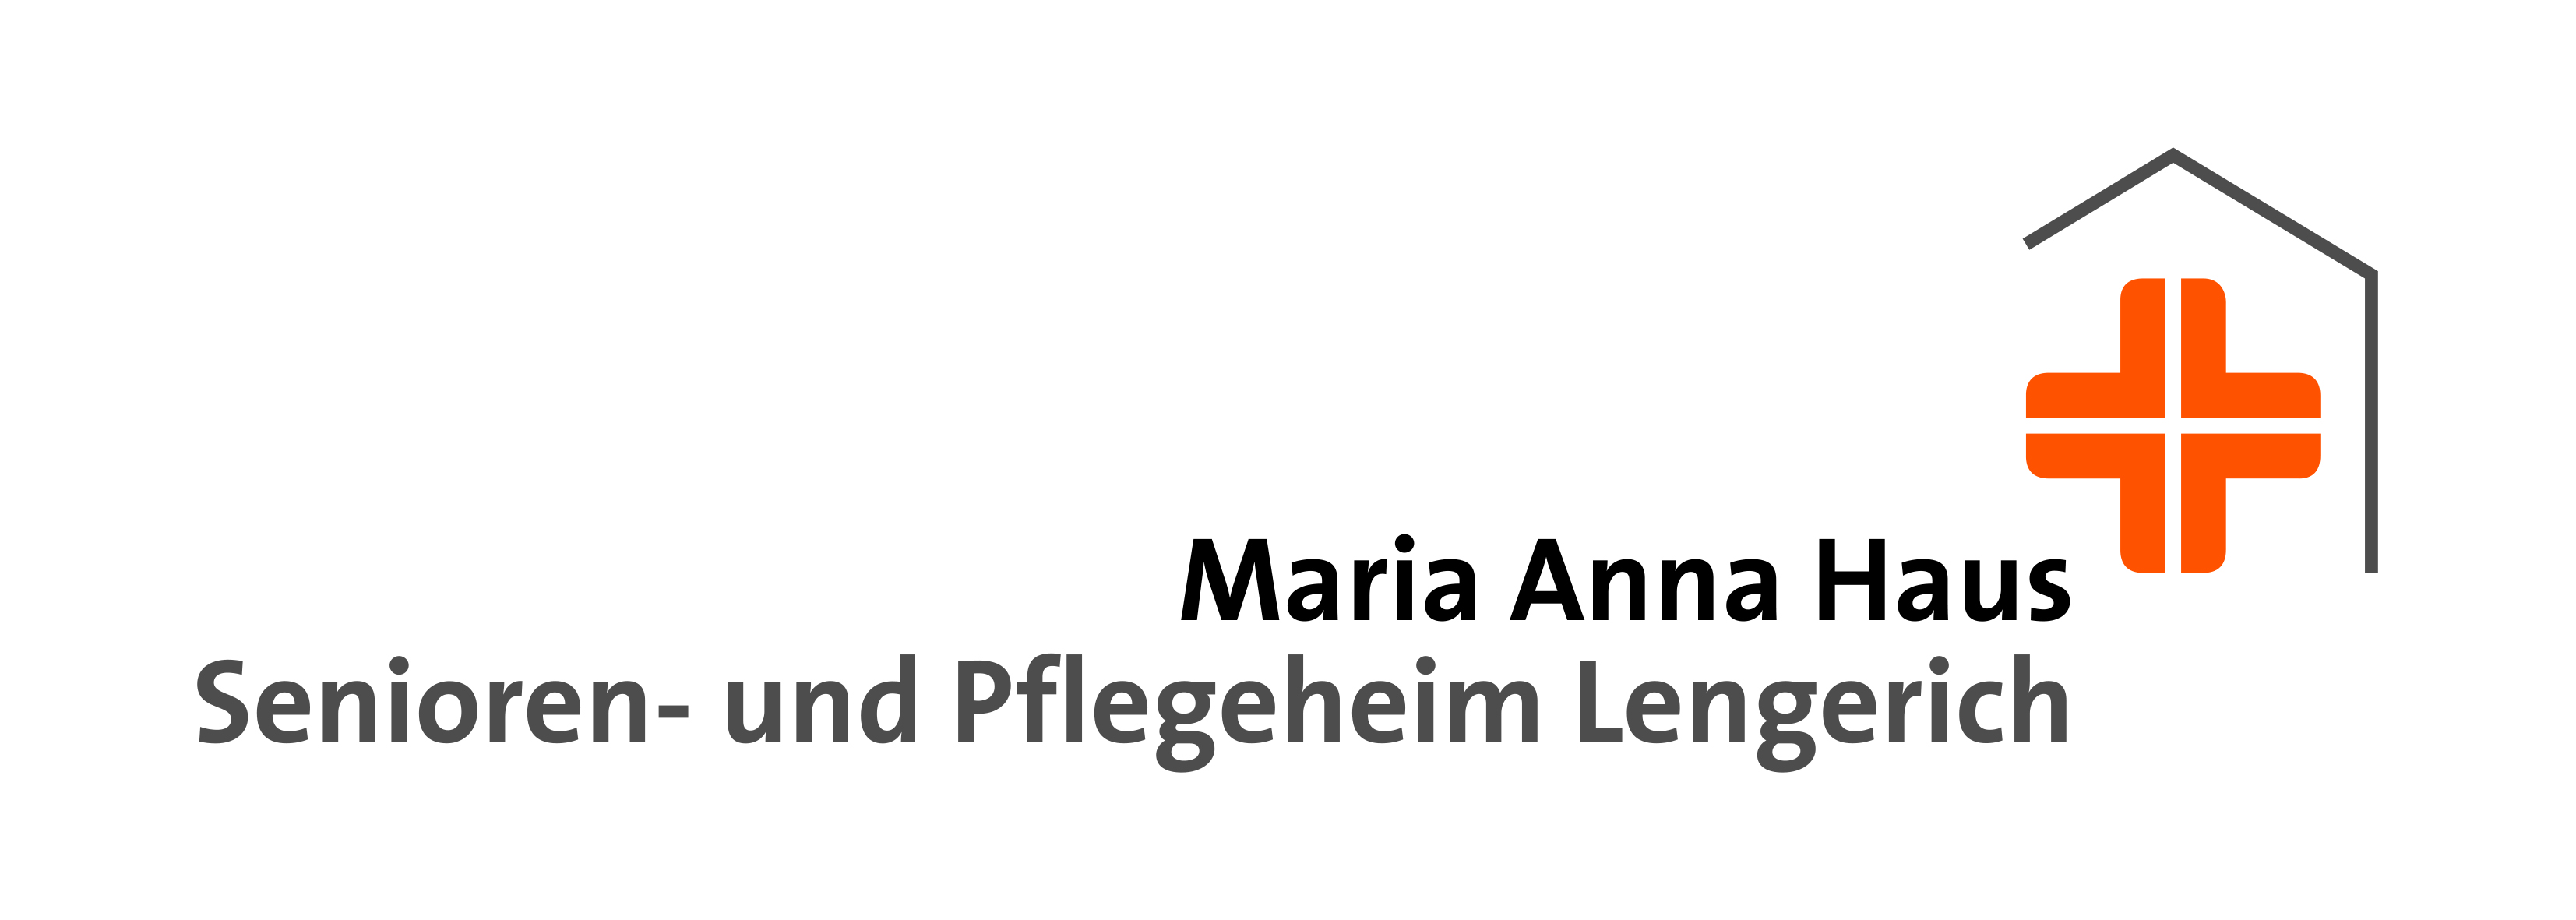 Maria Anna Haus Lengerich gGmbH